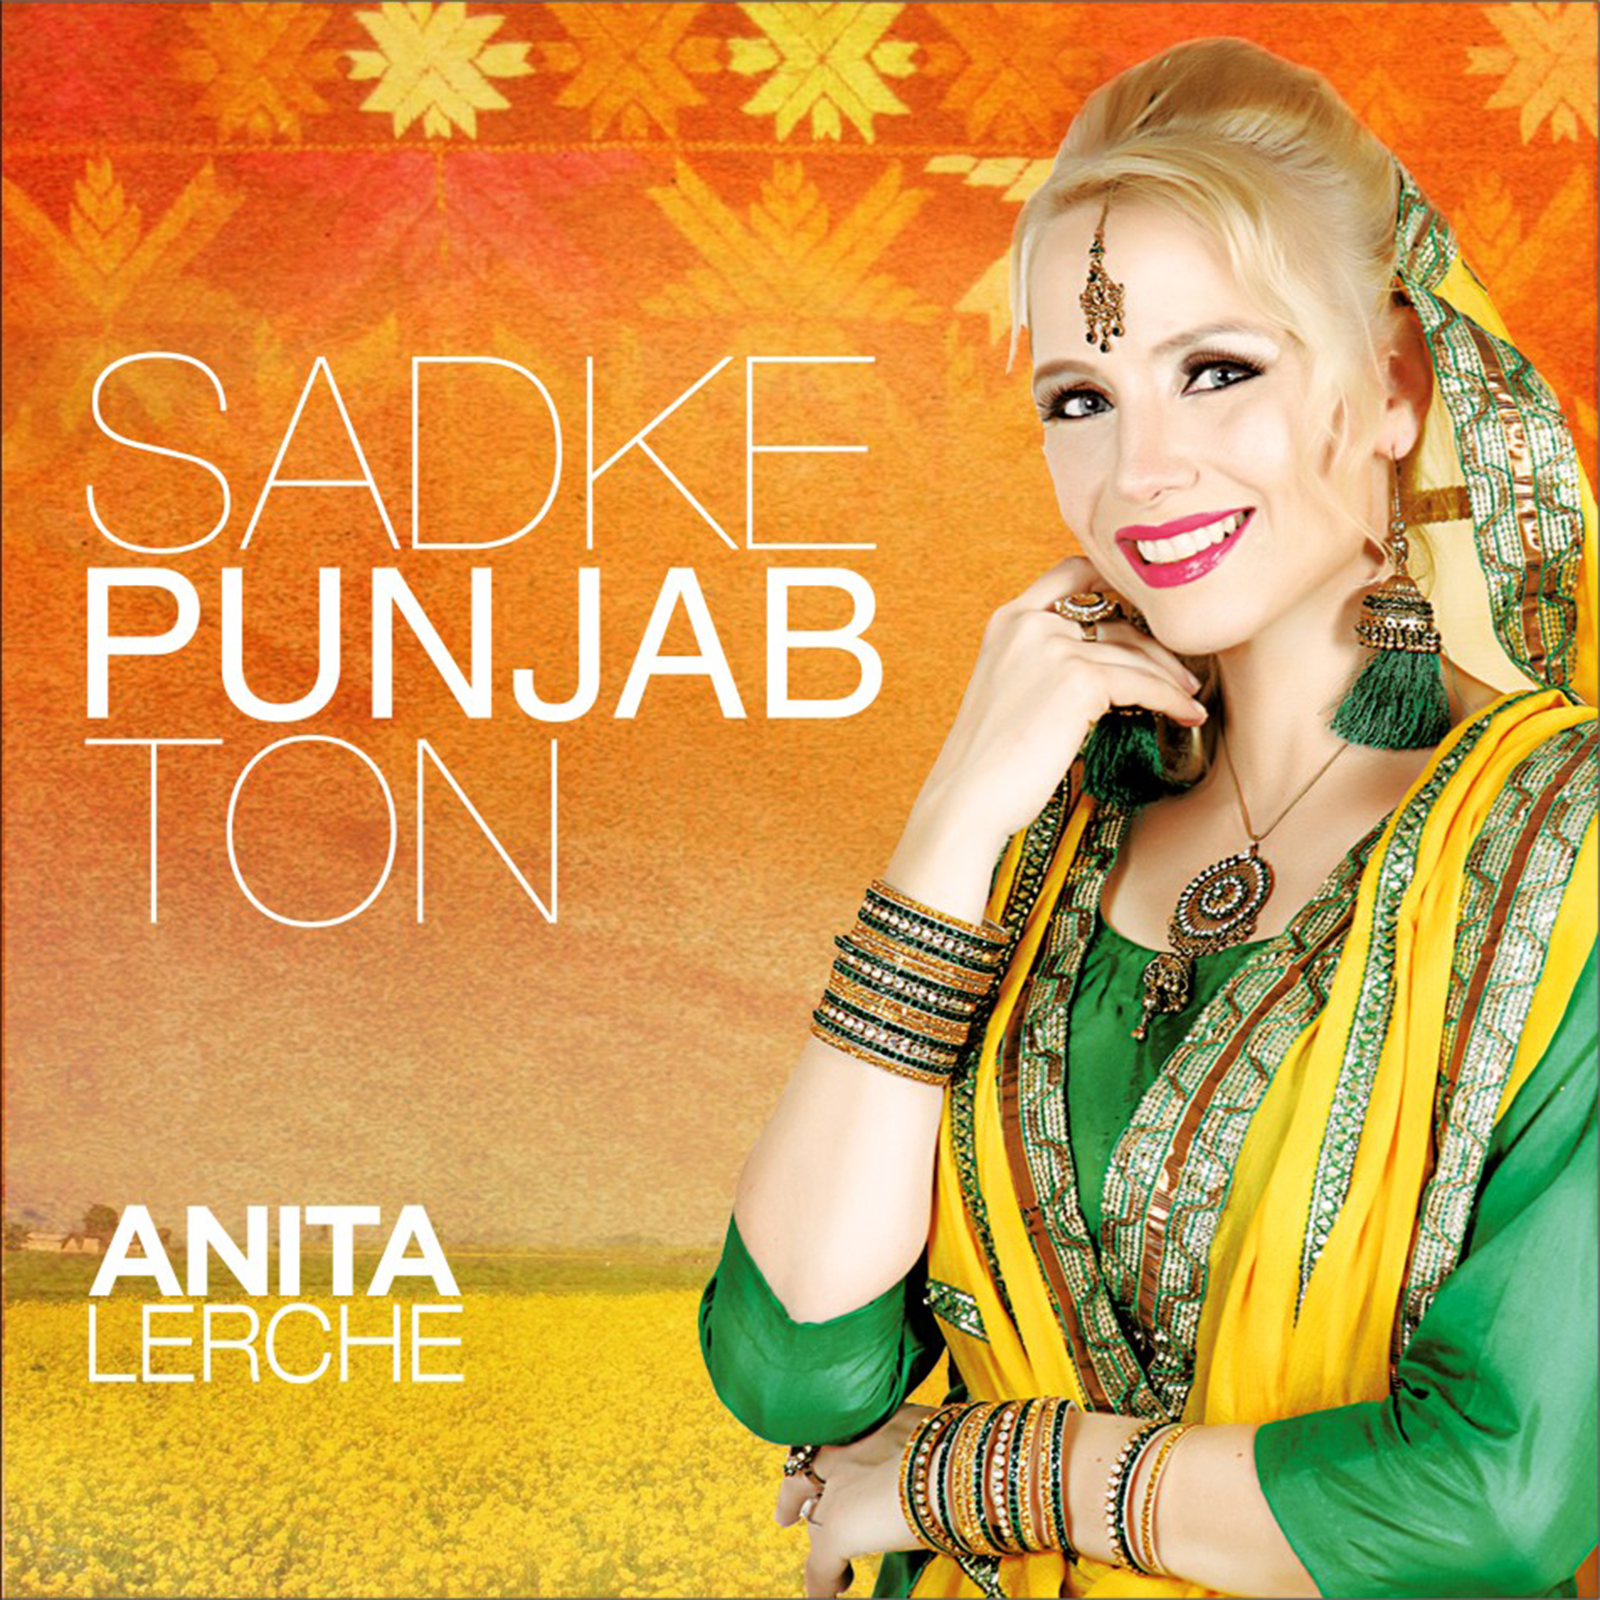 Sadke Punjab Ton